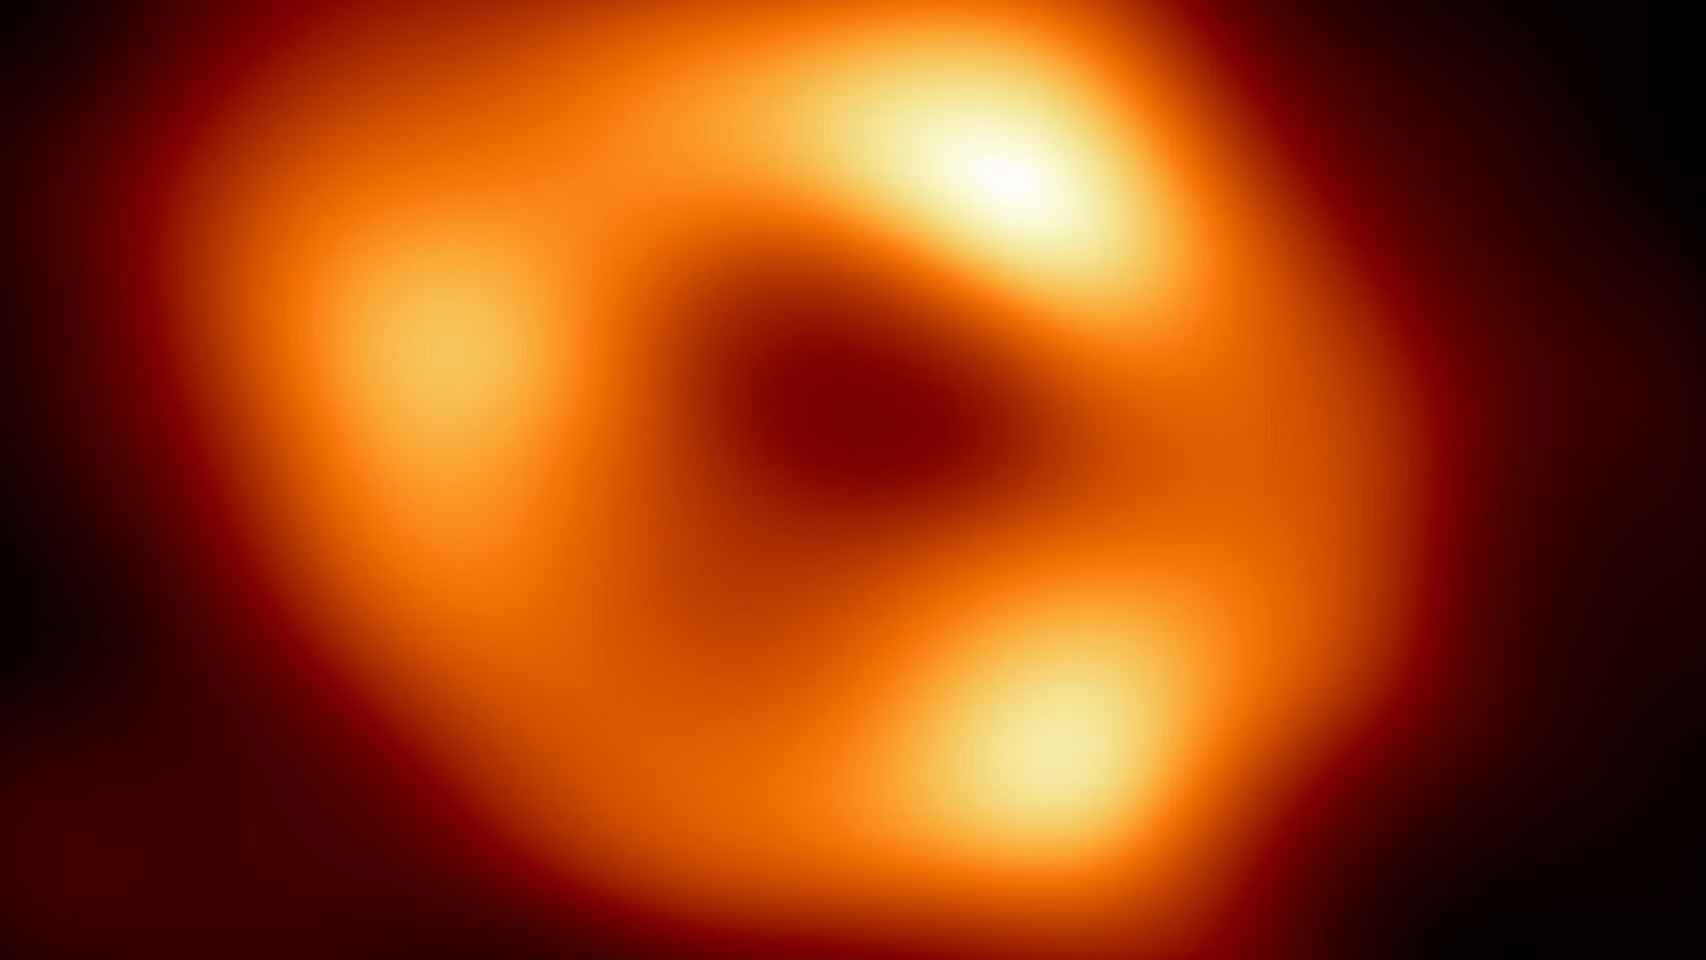 Sagitario A*, el agujero negro situado en el centro de la Vía Láctea. Imagen: EHT